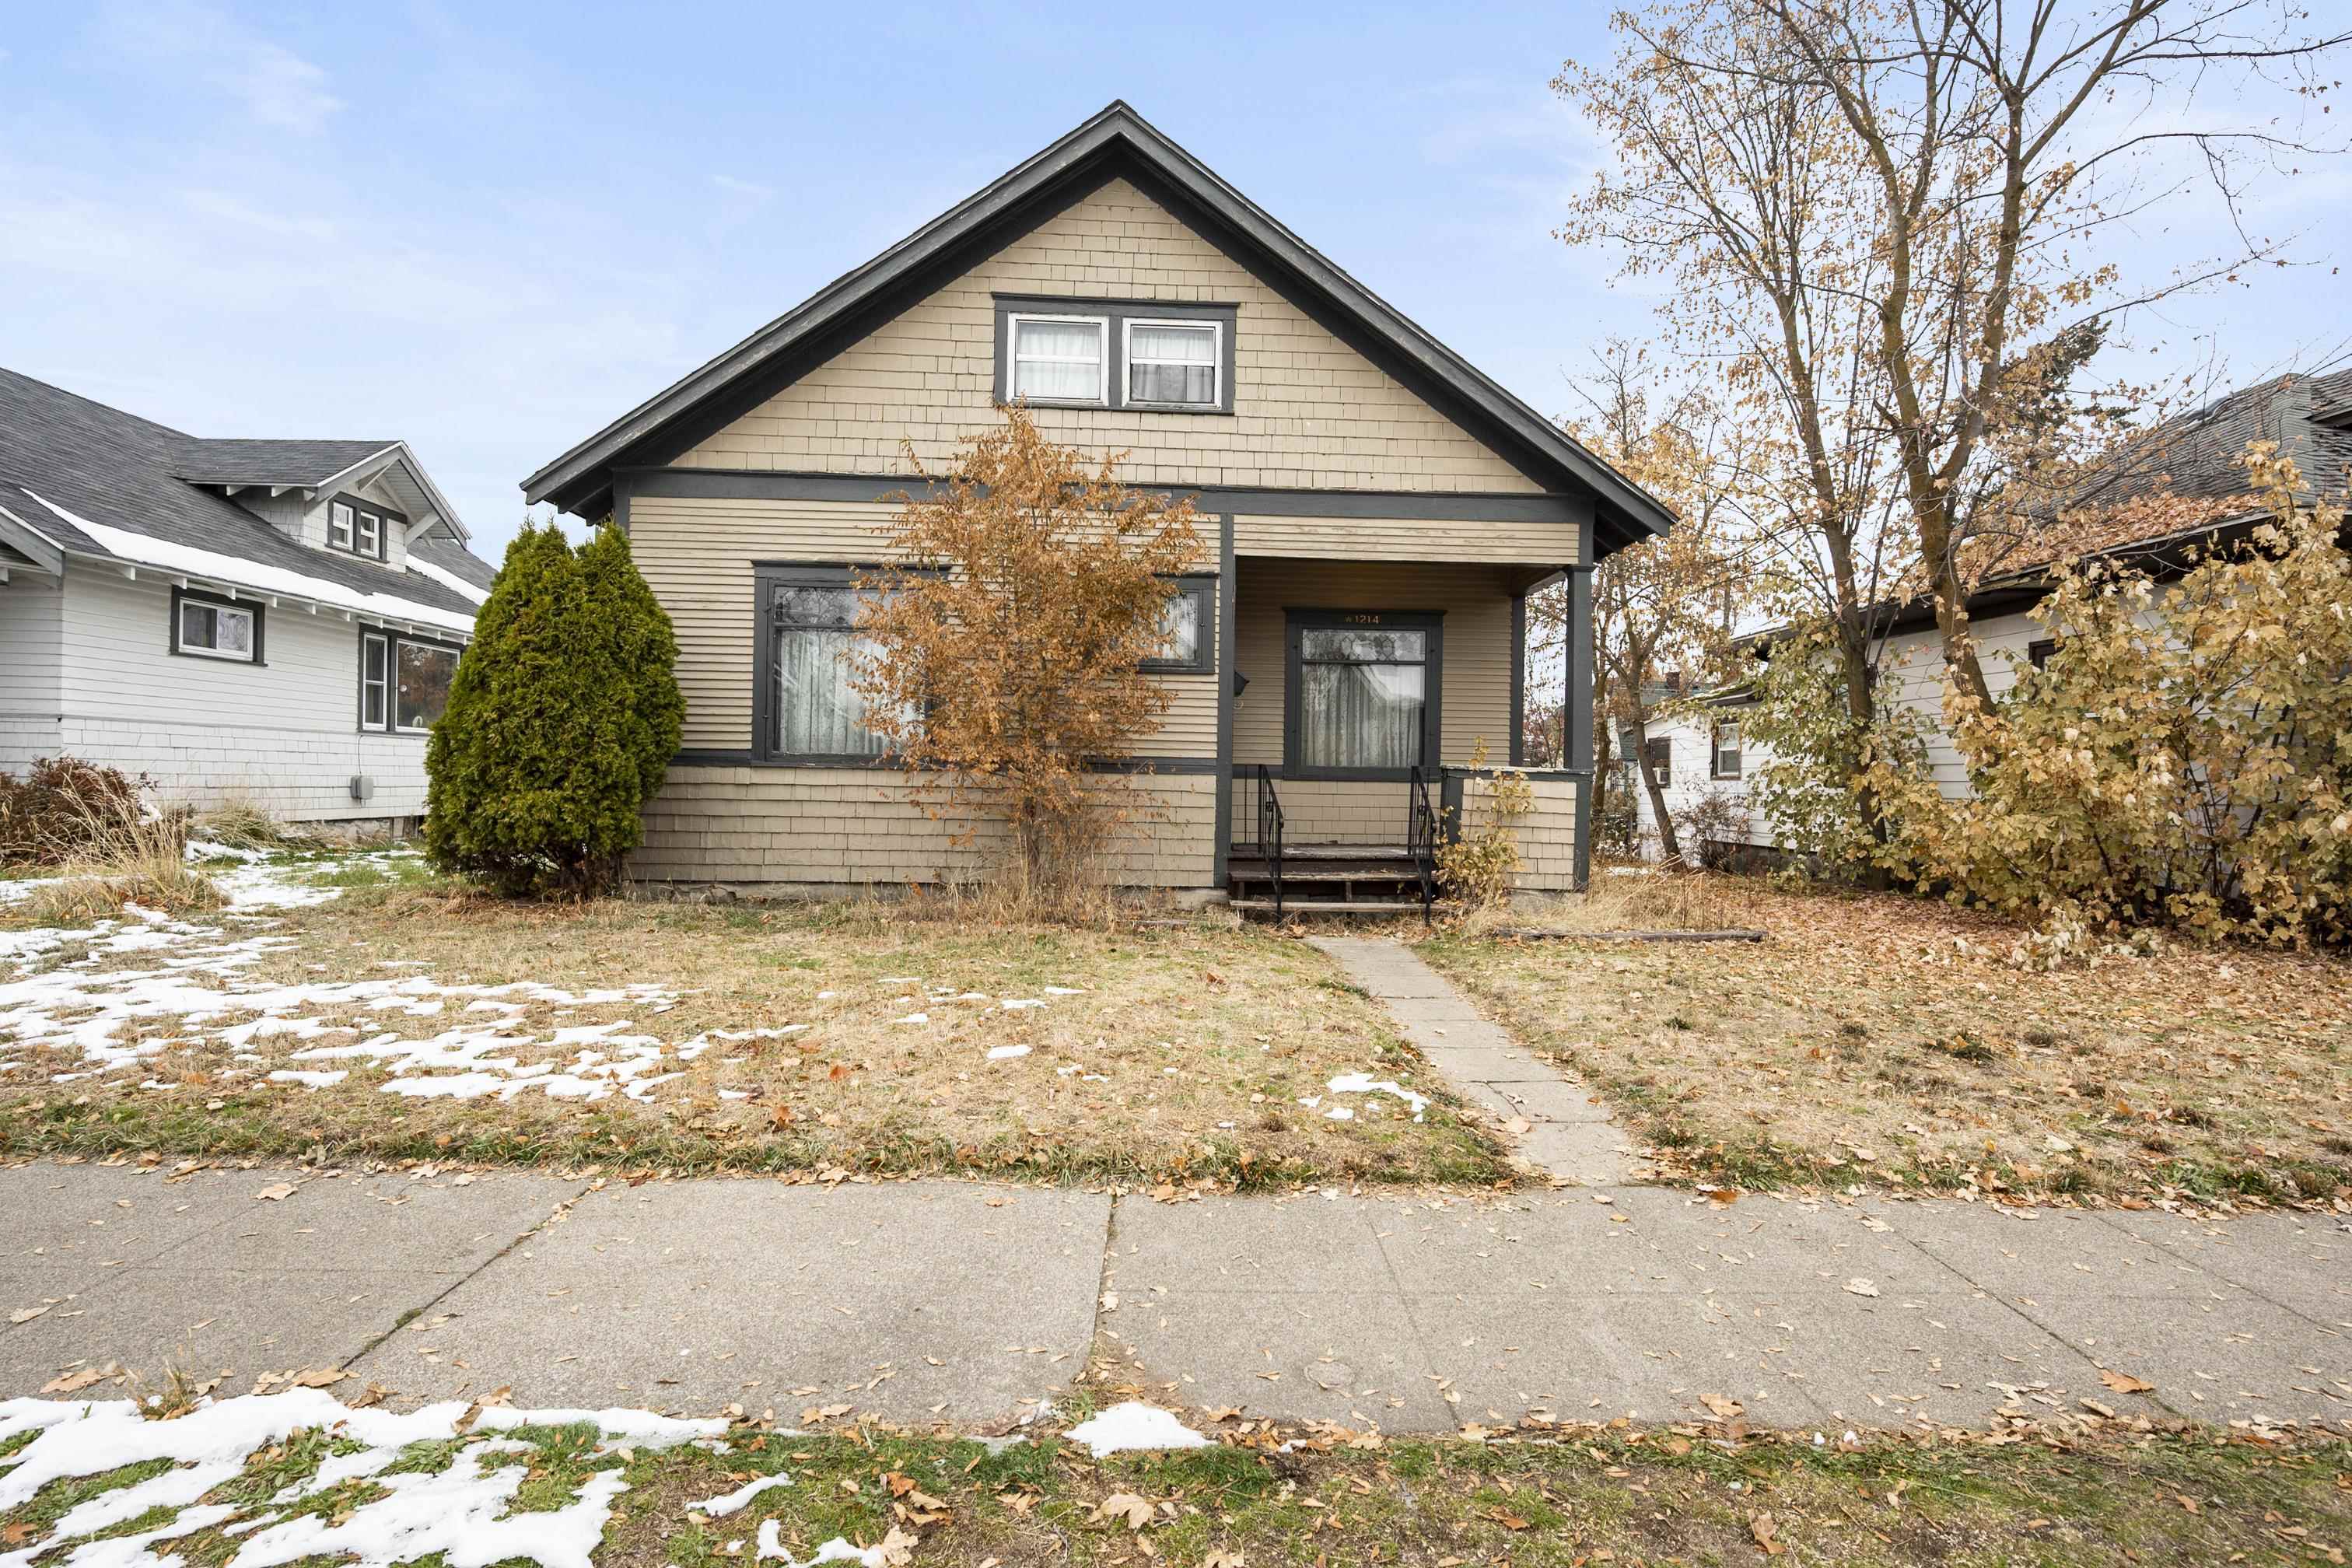 Home for sale in Spokane: 1214 W Montgomery Ave, Spokane, WA 99205